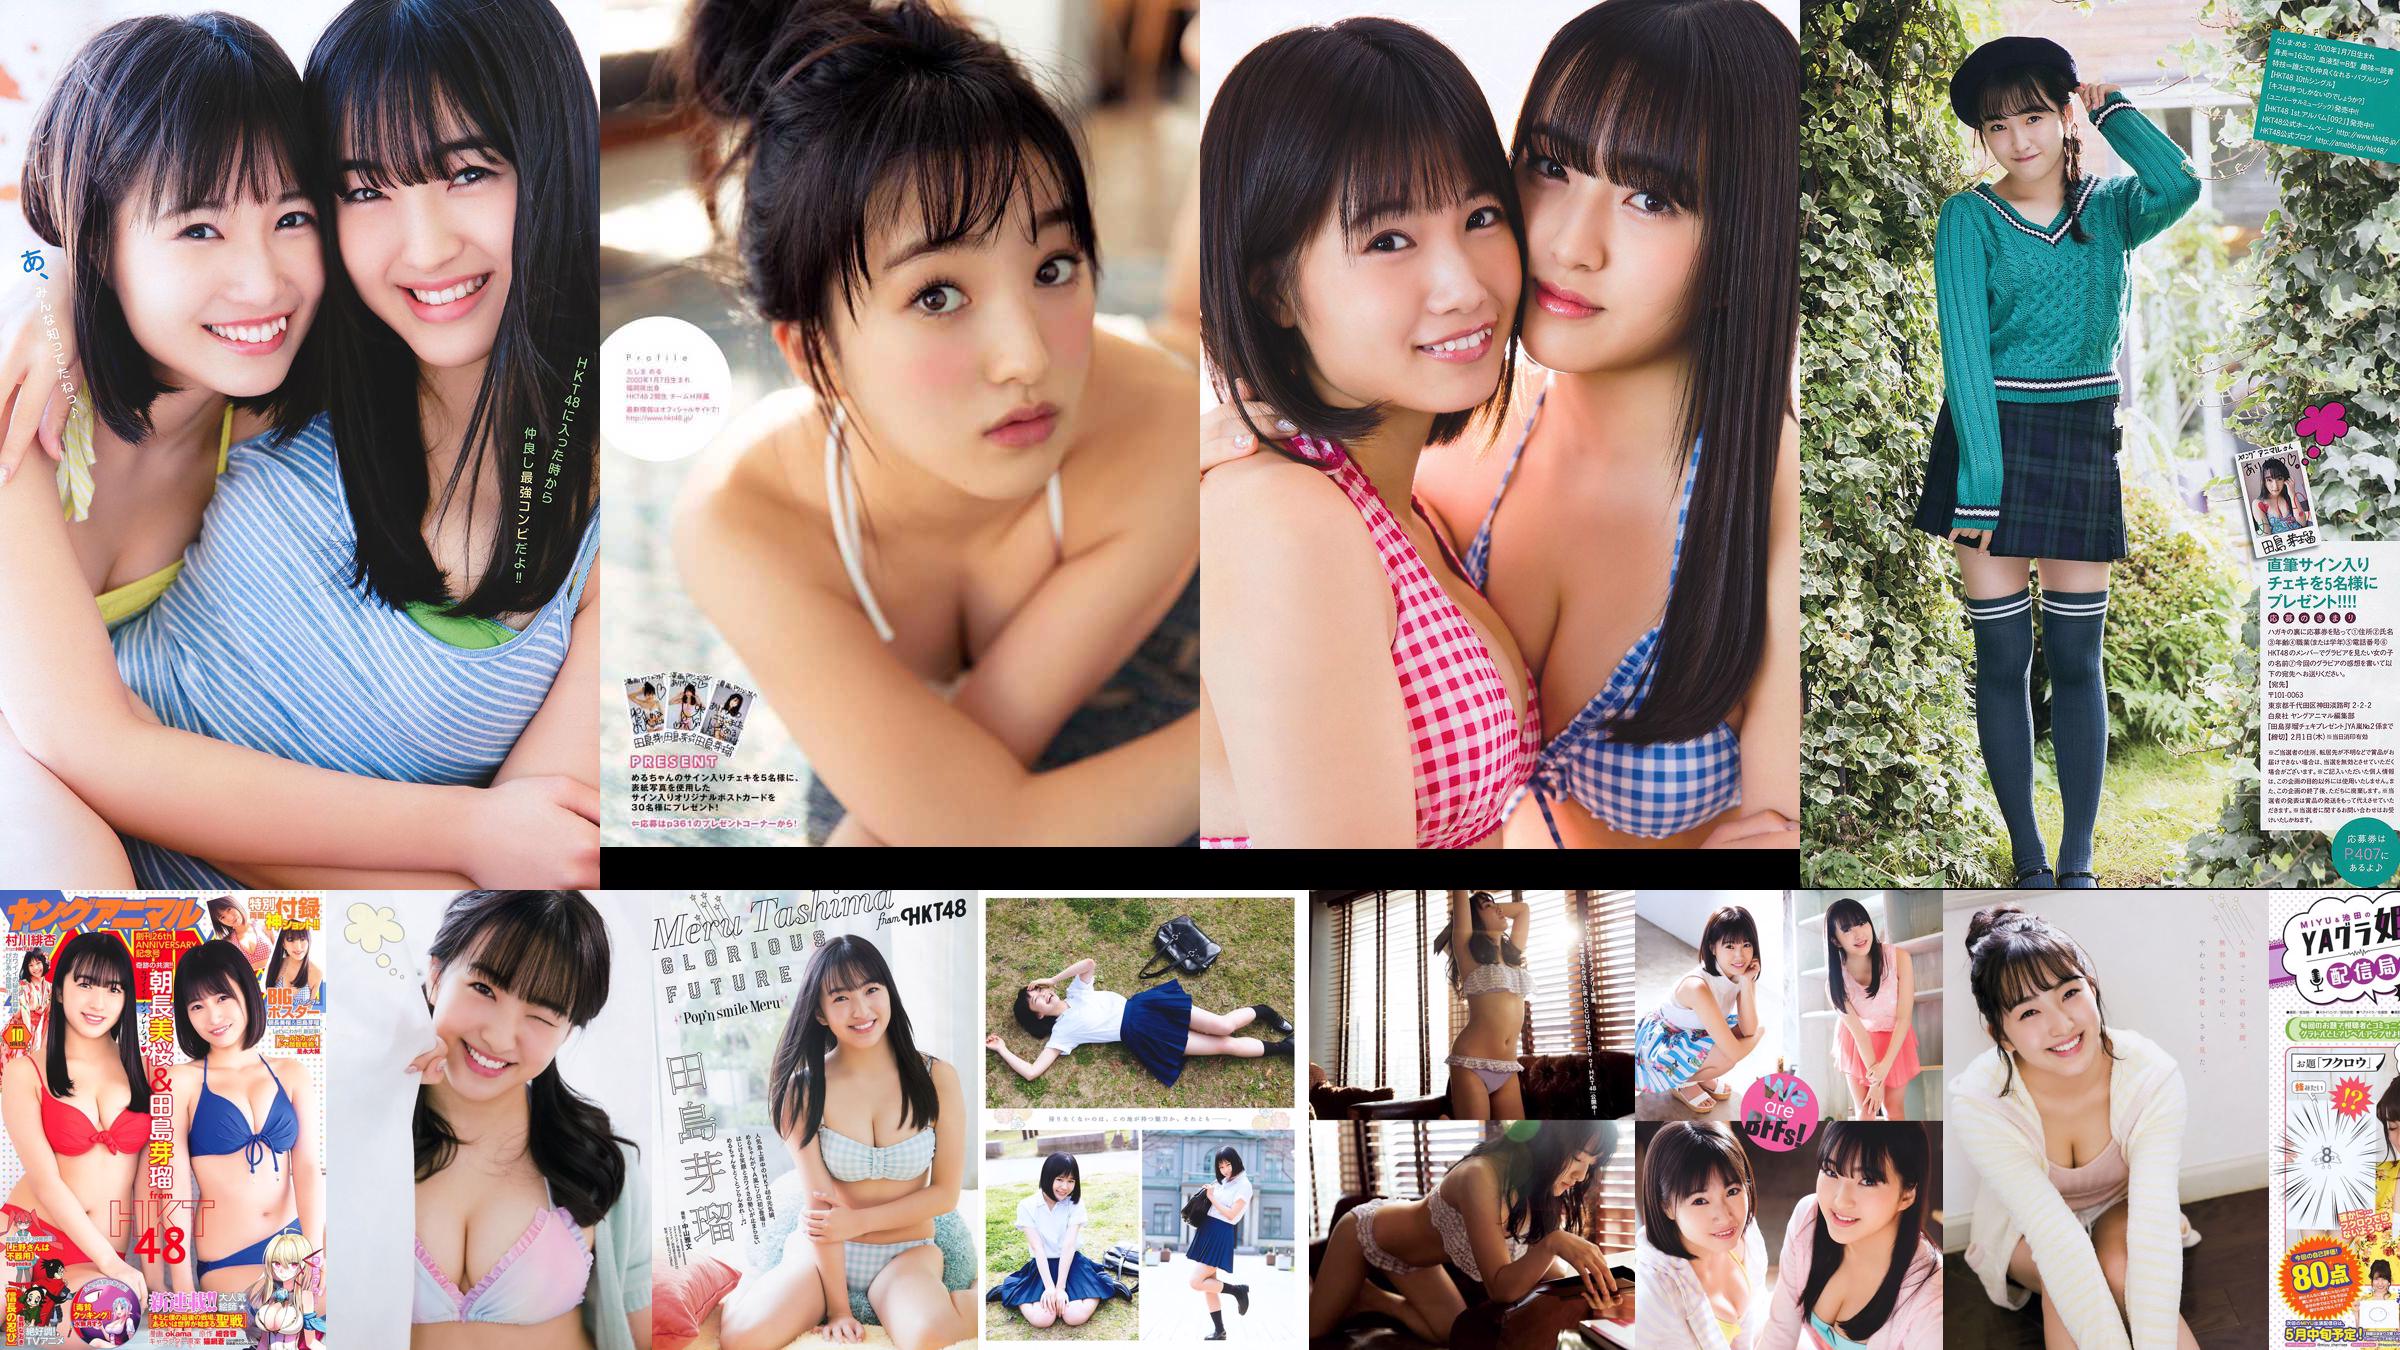 Nana Ayano Yuka Someya [Young Animal Arashi Special Edition] No.06 2015 Foto No.33a825 Pagina 2